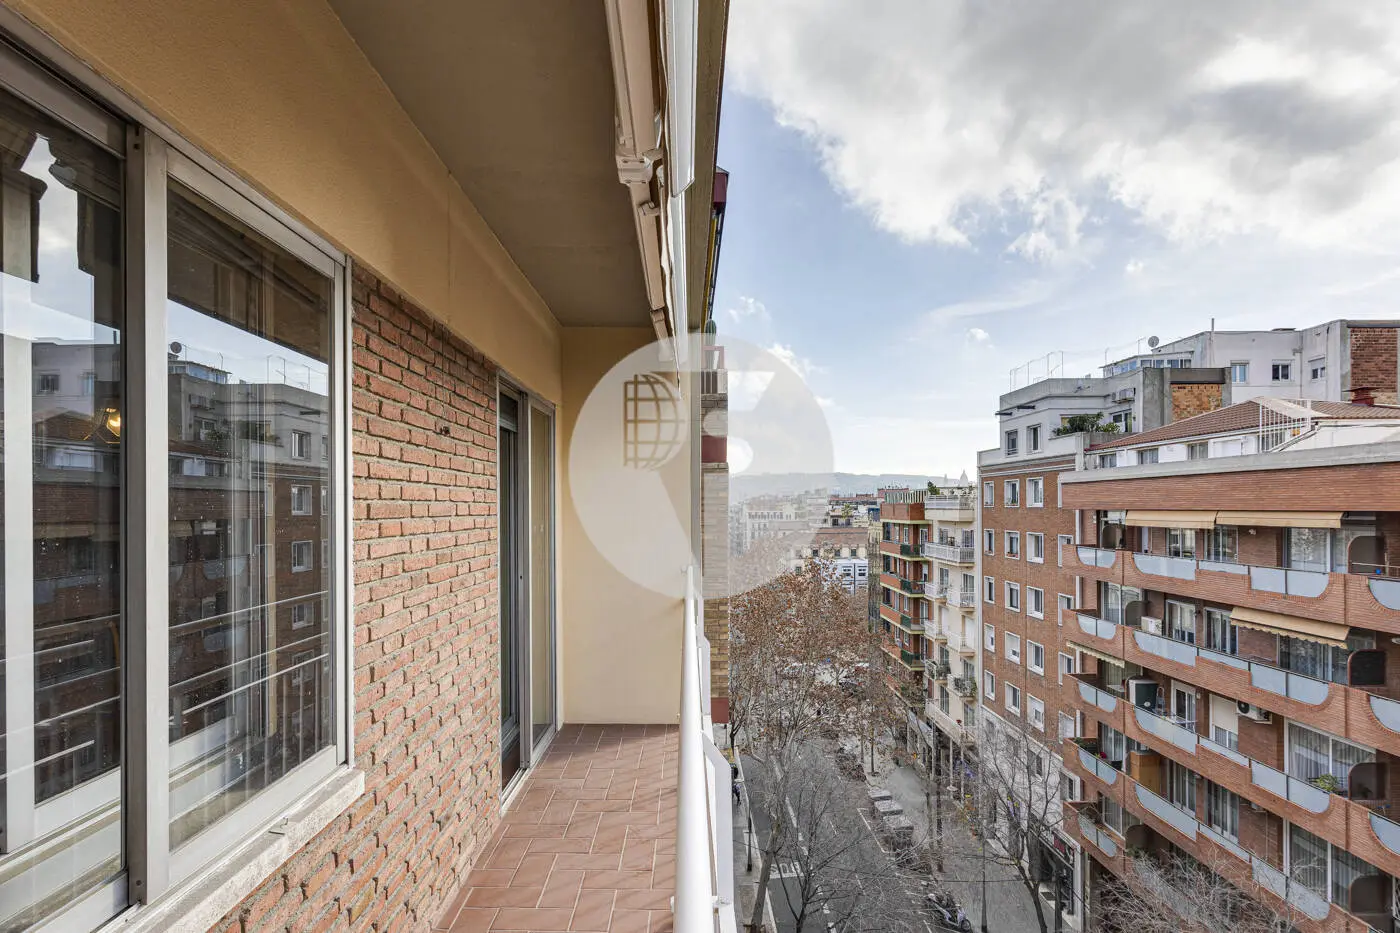 Pis de 3 habitacions ubicat al barri de la Nova Esquerra de l'Eixample de Barcelona. 7